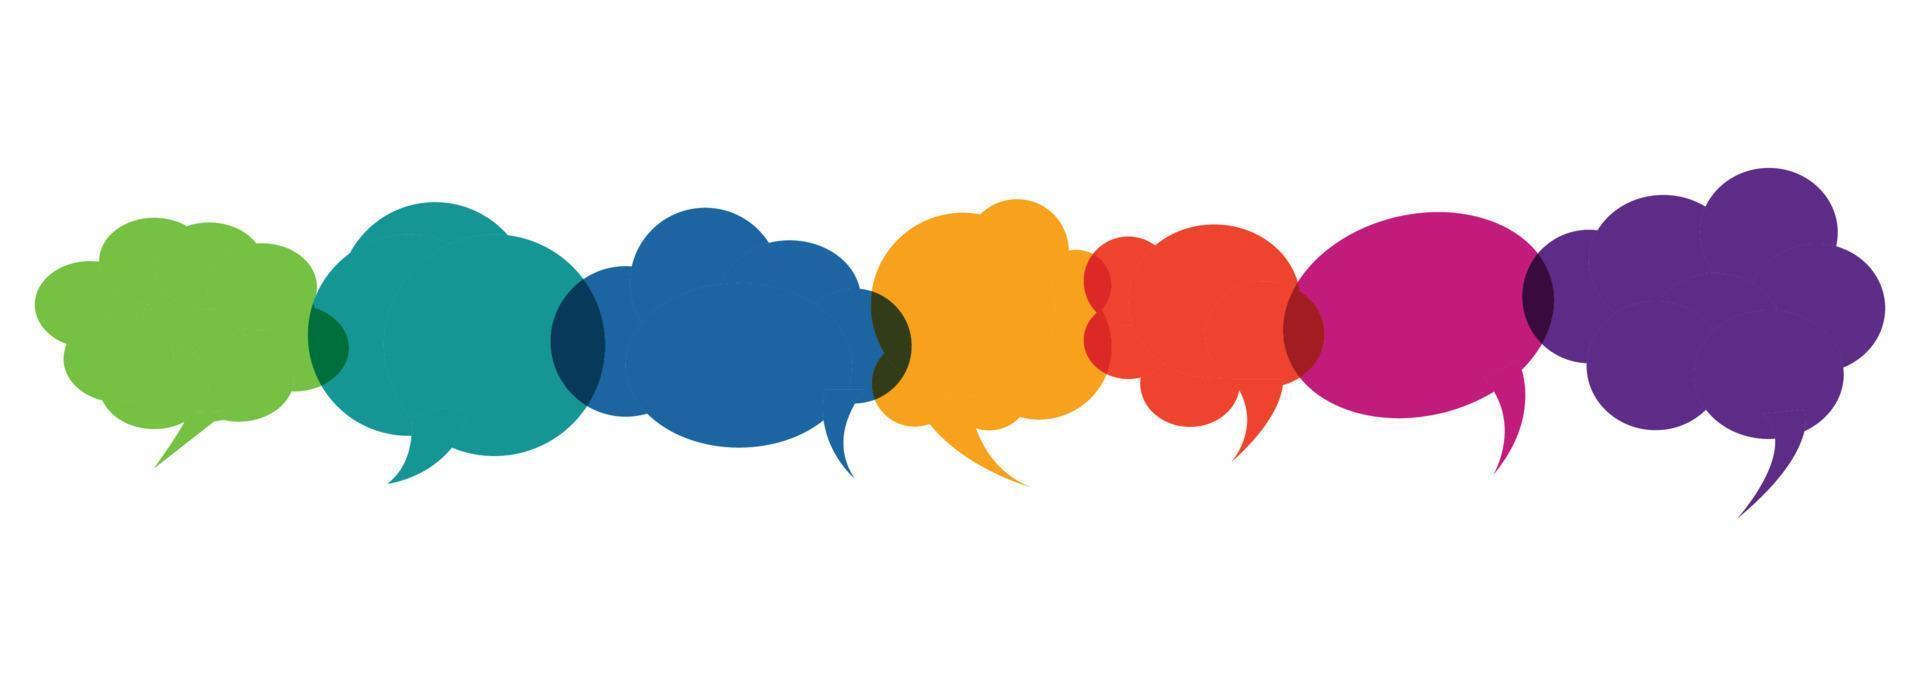 kleurrijke toespraak bubble pictogram communicatieconcept. vectorillustratieontwerp voor spreken, discussie, chatten en praten symbool vector